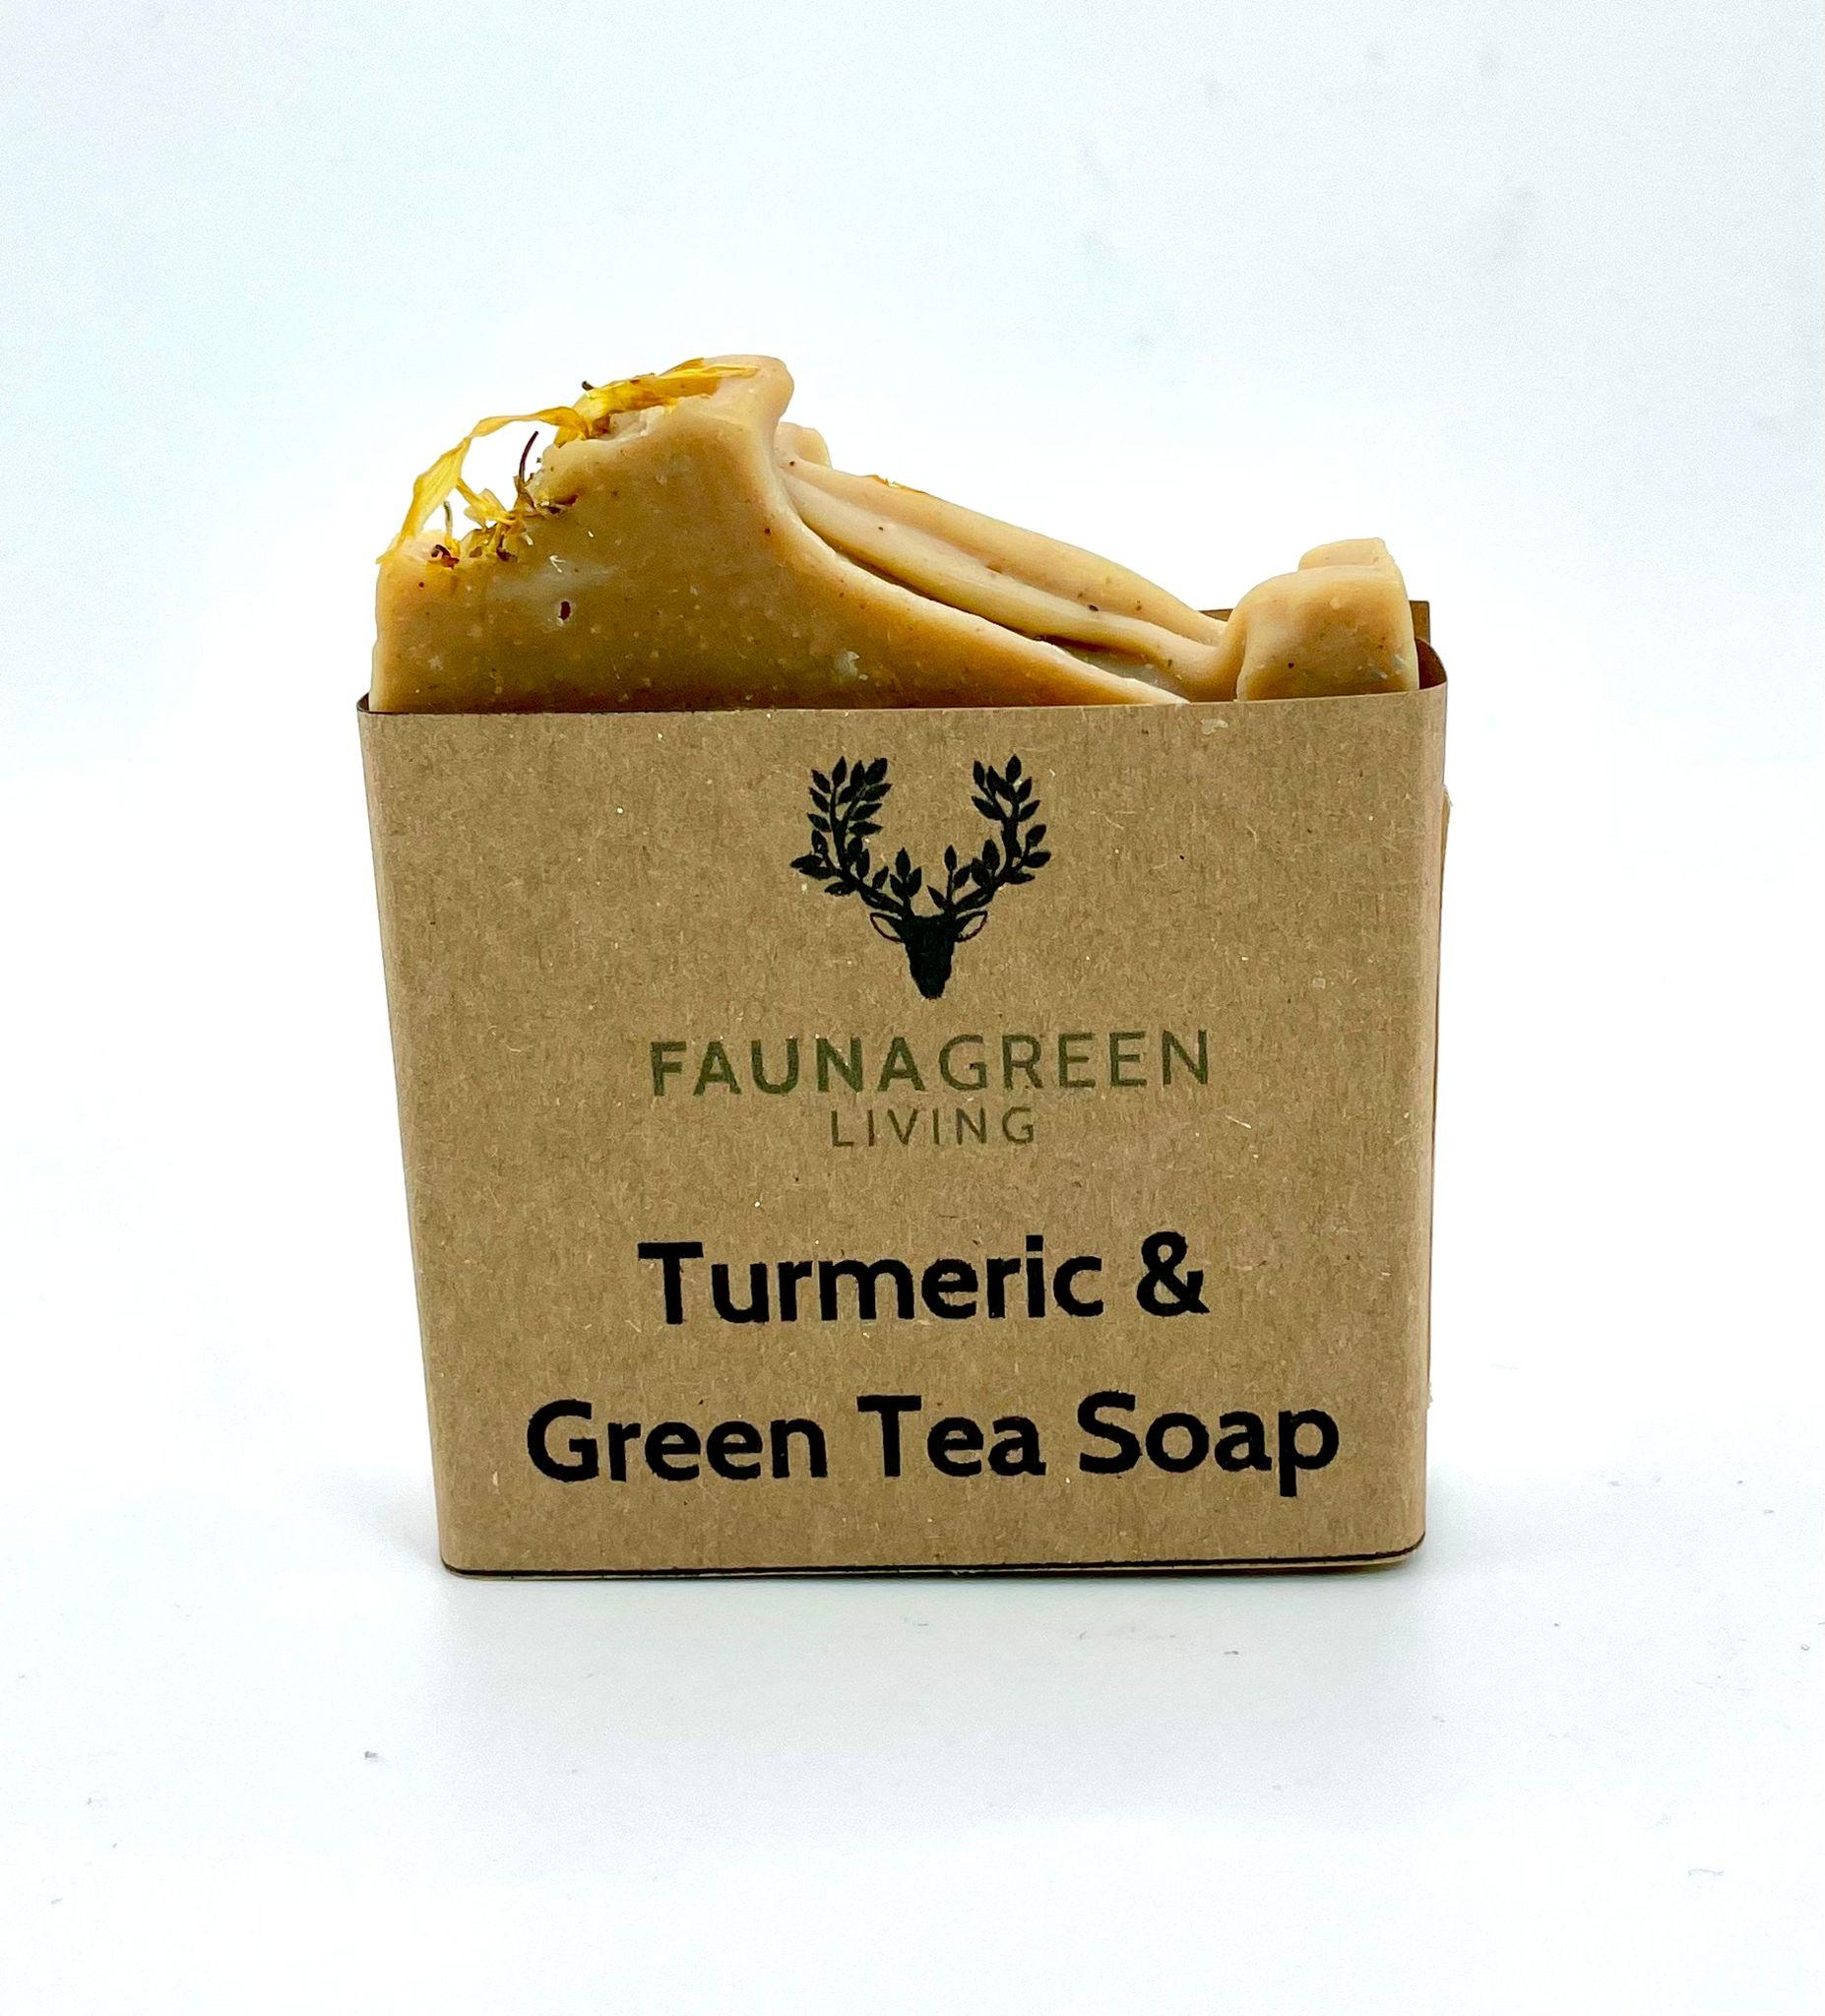 Turmeric & Green Tea Soap